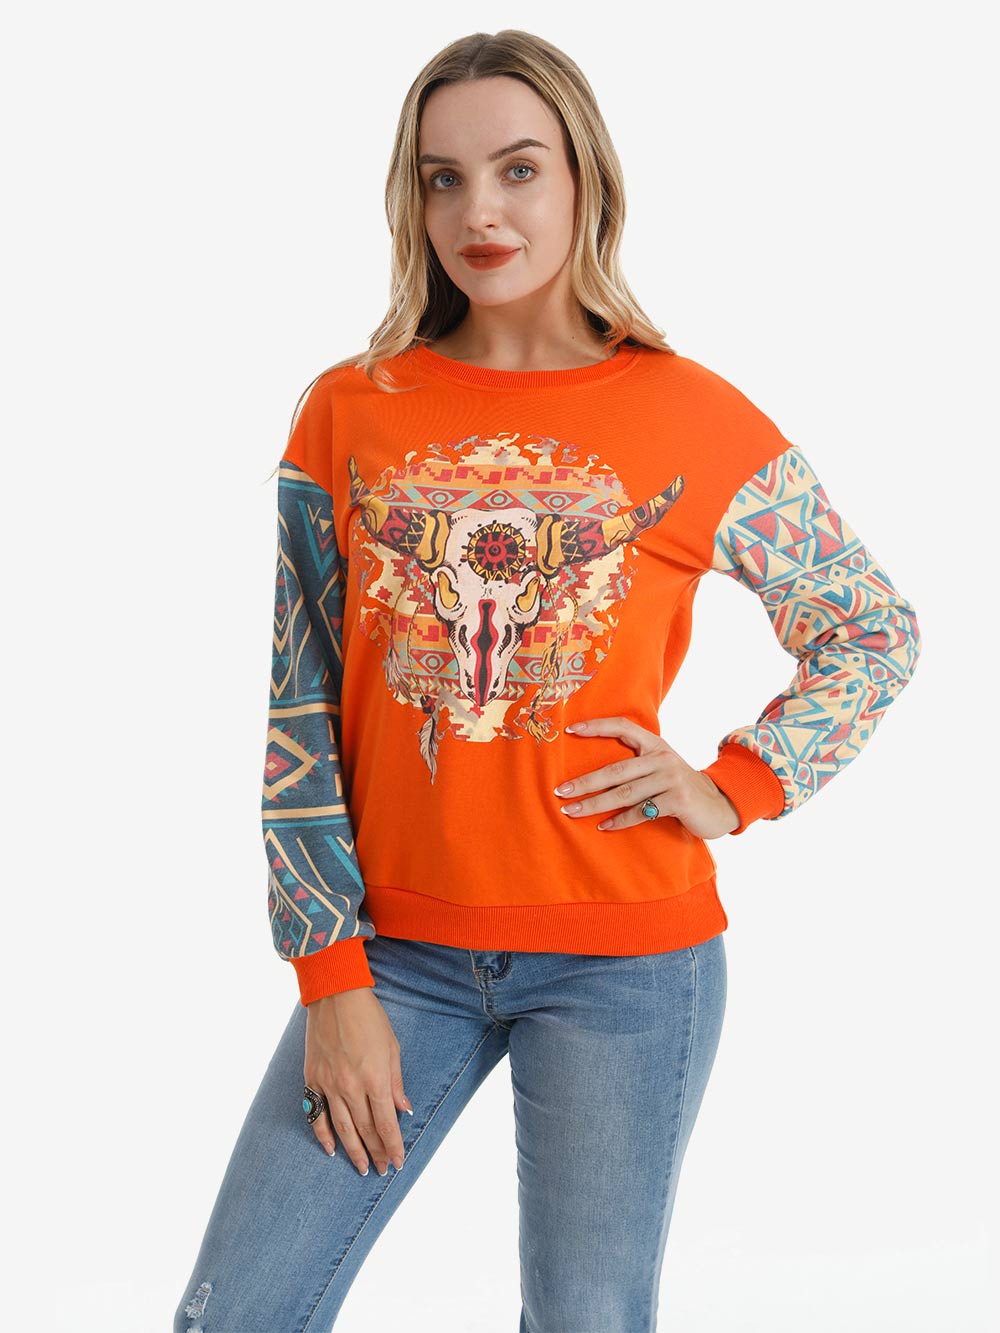 American Bling Women Vintage Bull Skull Aztec Style Sweatshirt - Cowgirl Wear